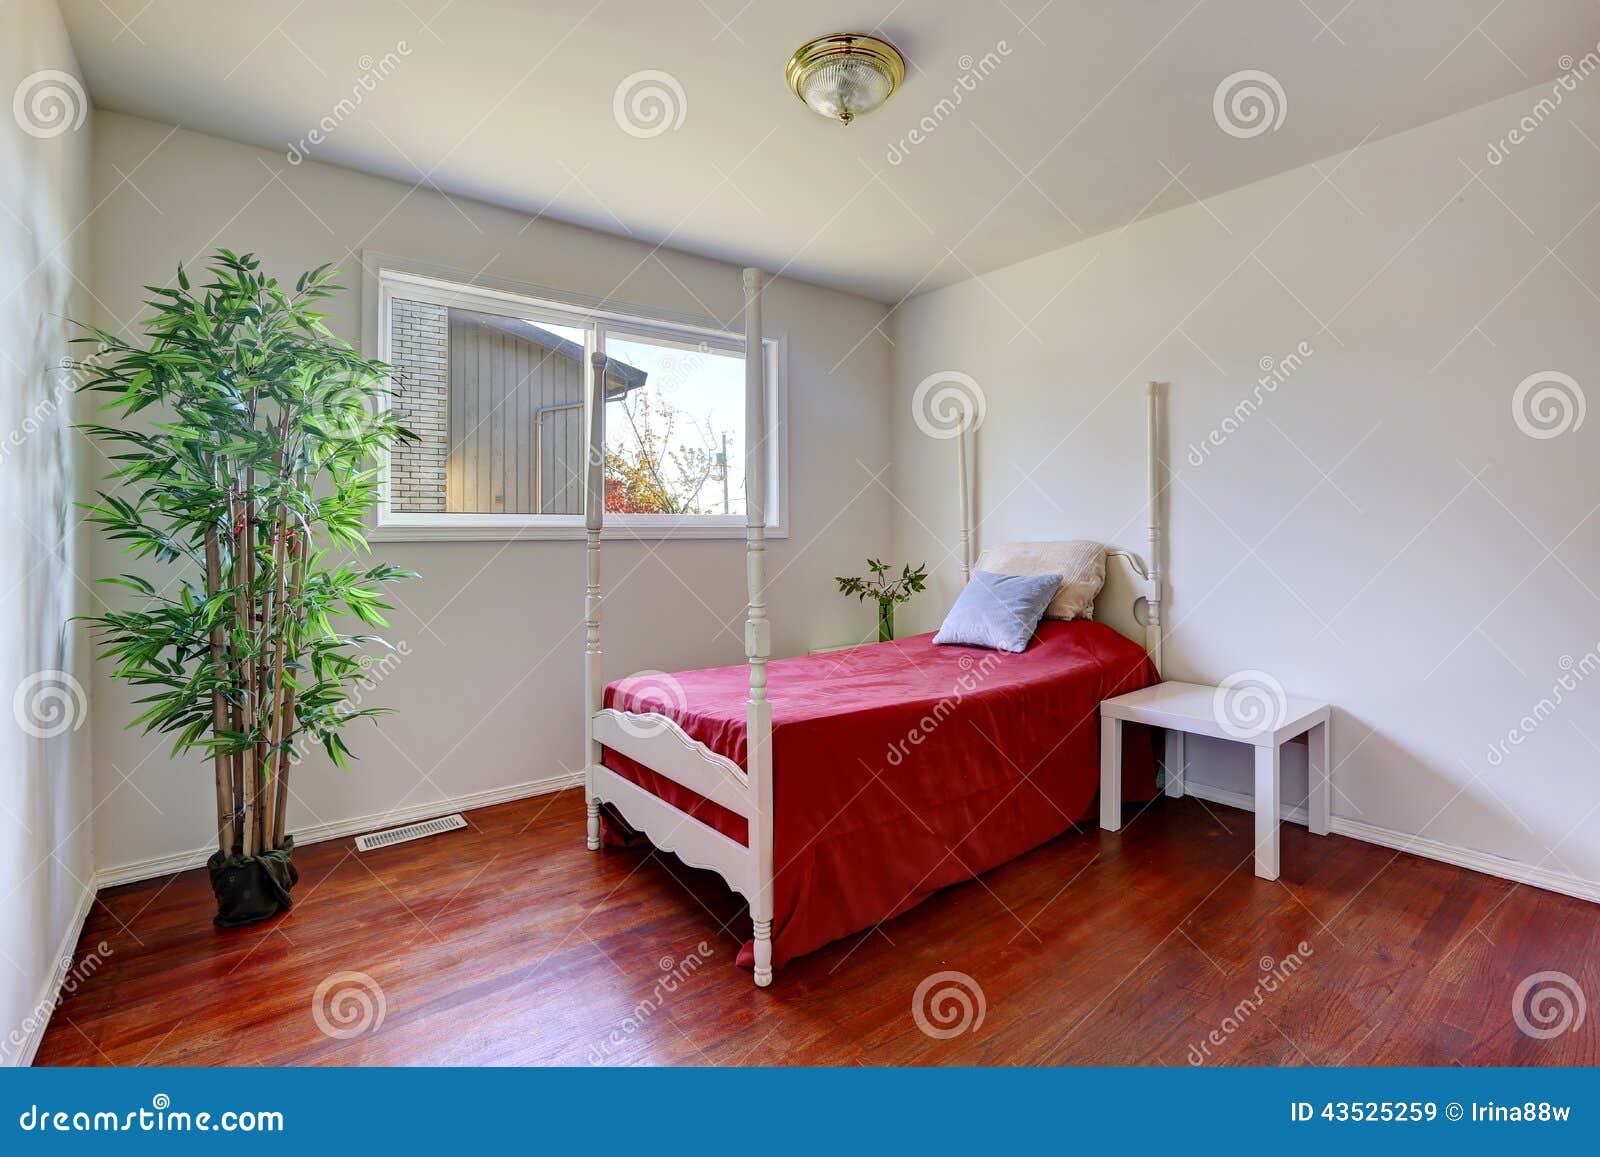 Schlafzimmerinnenraum Mit Hohem Pfostenbett Stockbild - Bild von